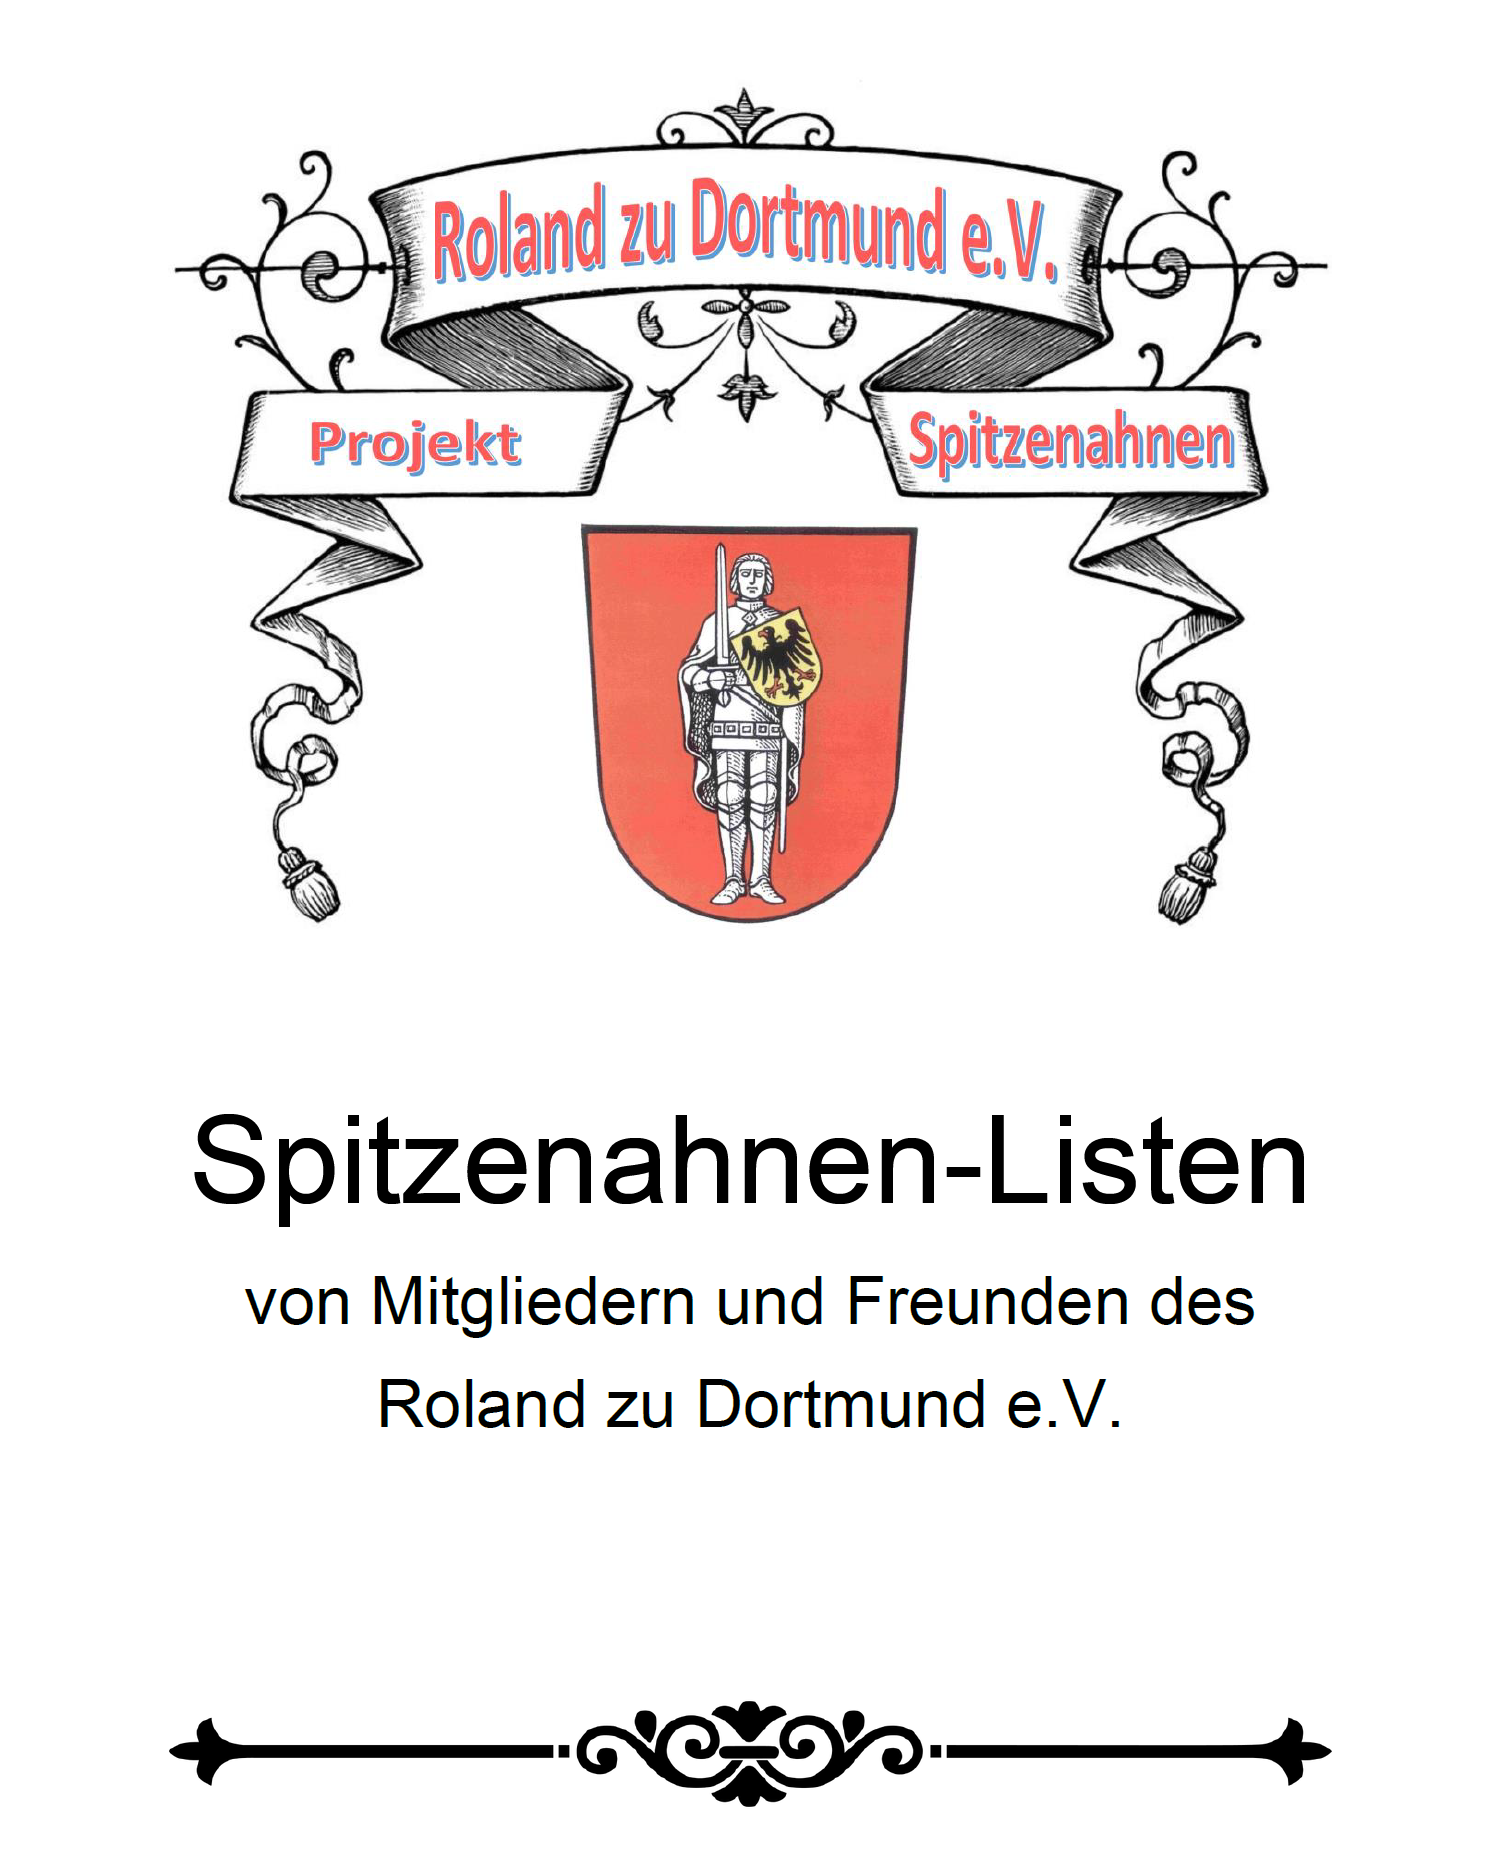 RzD (2022), Spitzenahnen-Listen der Mitglieder und Freunde des Roland zu Dortmund